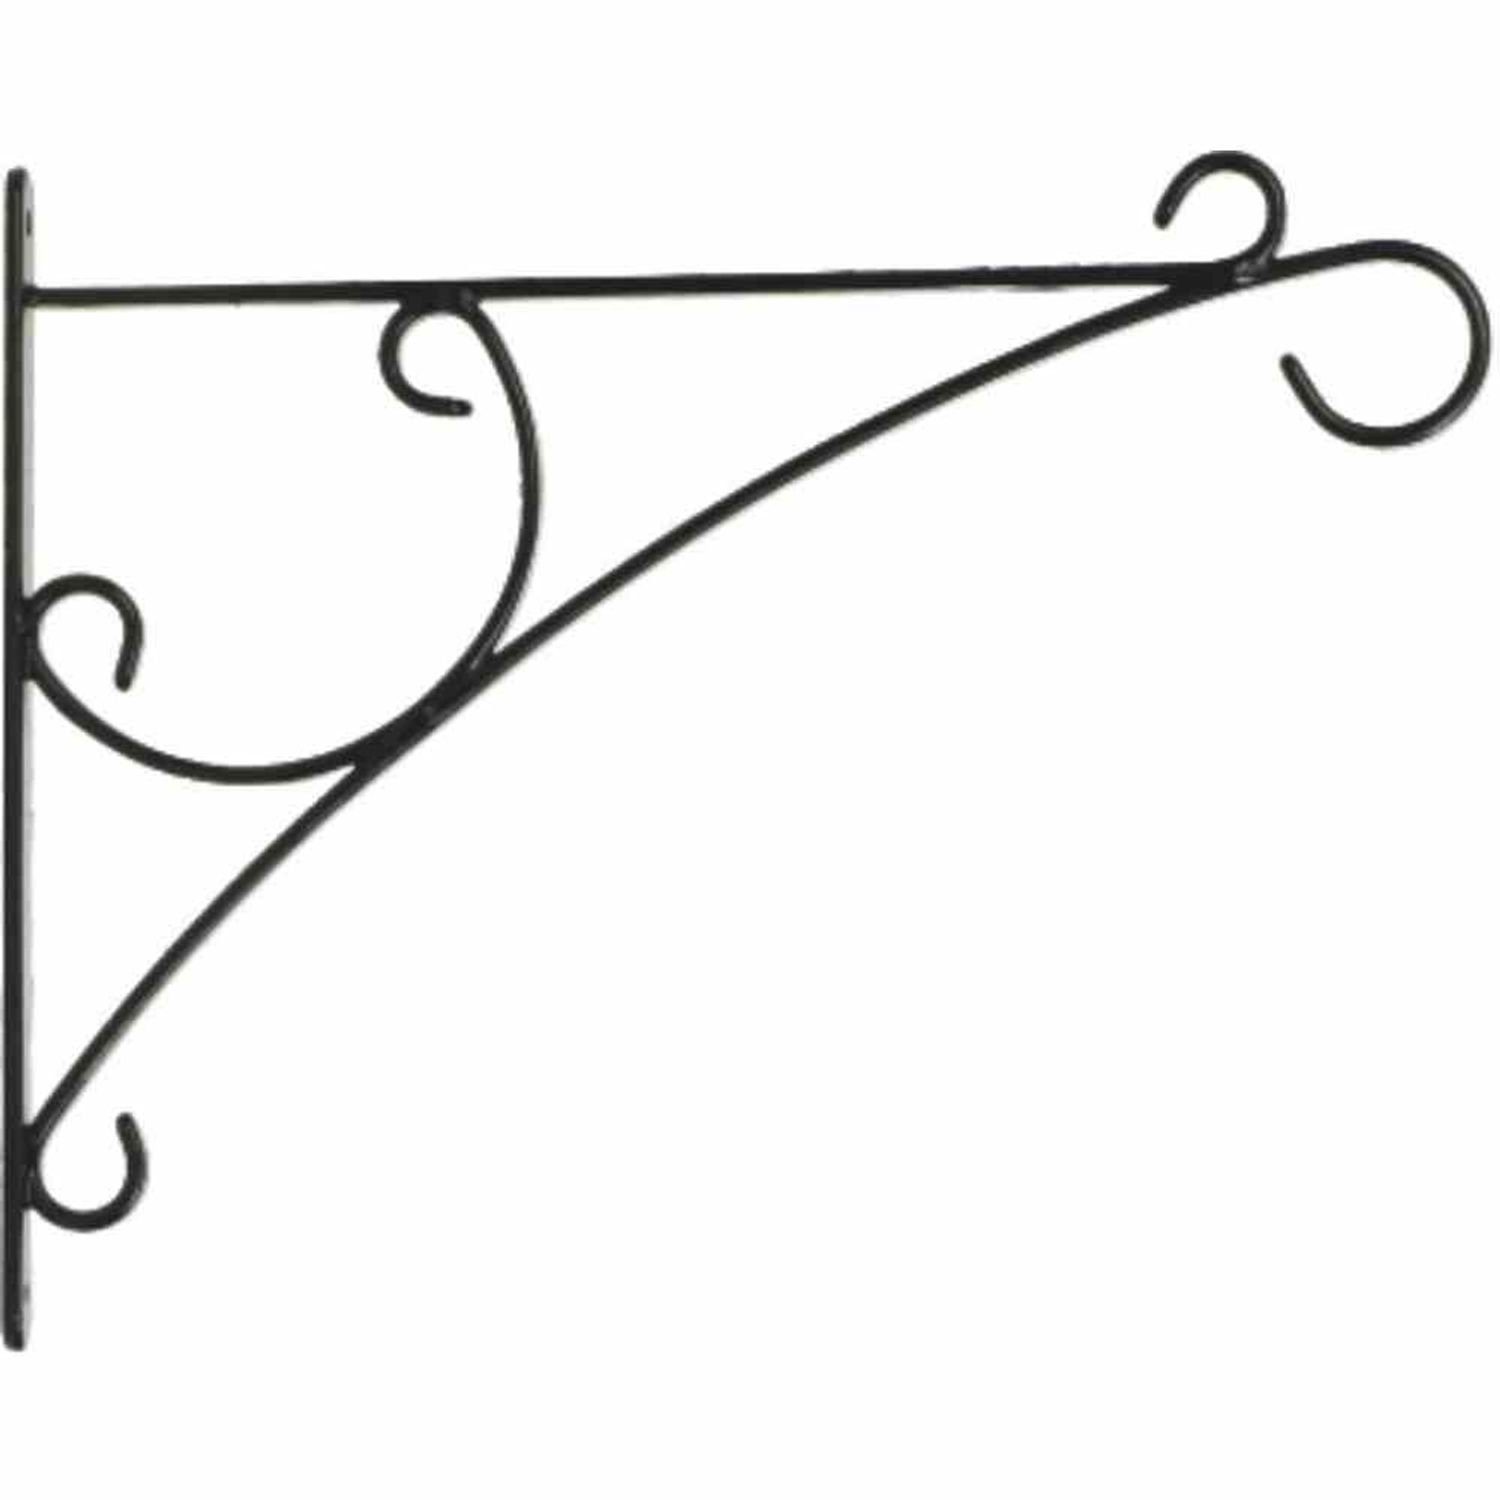 Siena Garden Pflanzkübel Wandhaken Curve, 35 cm, schwarz wetterbeständig